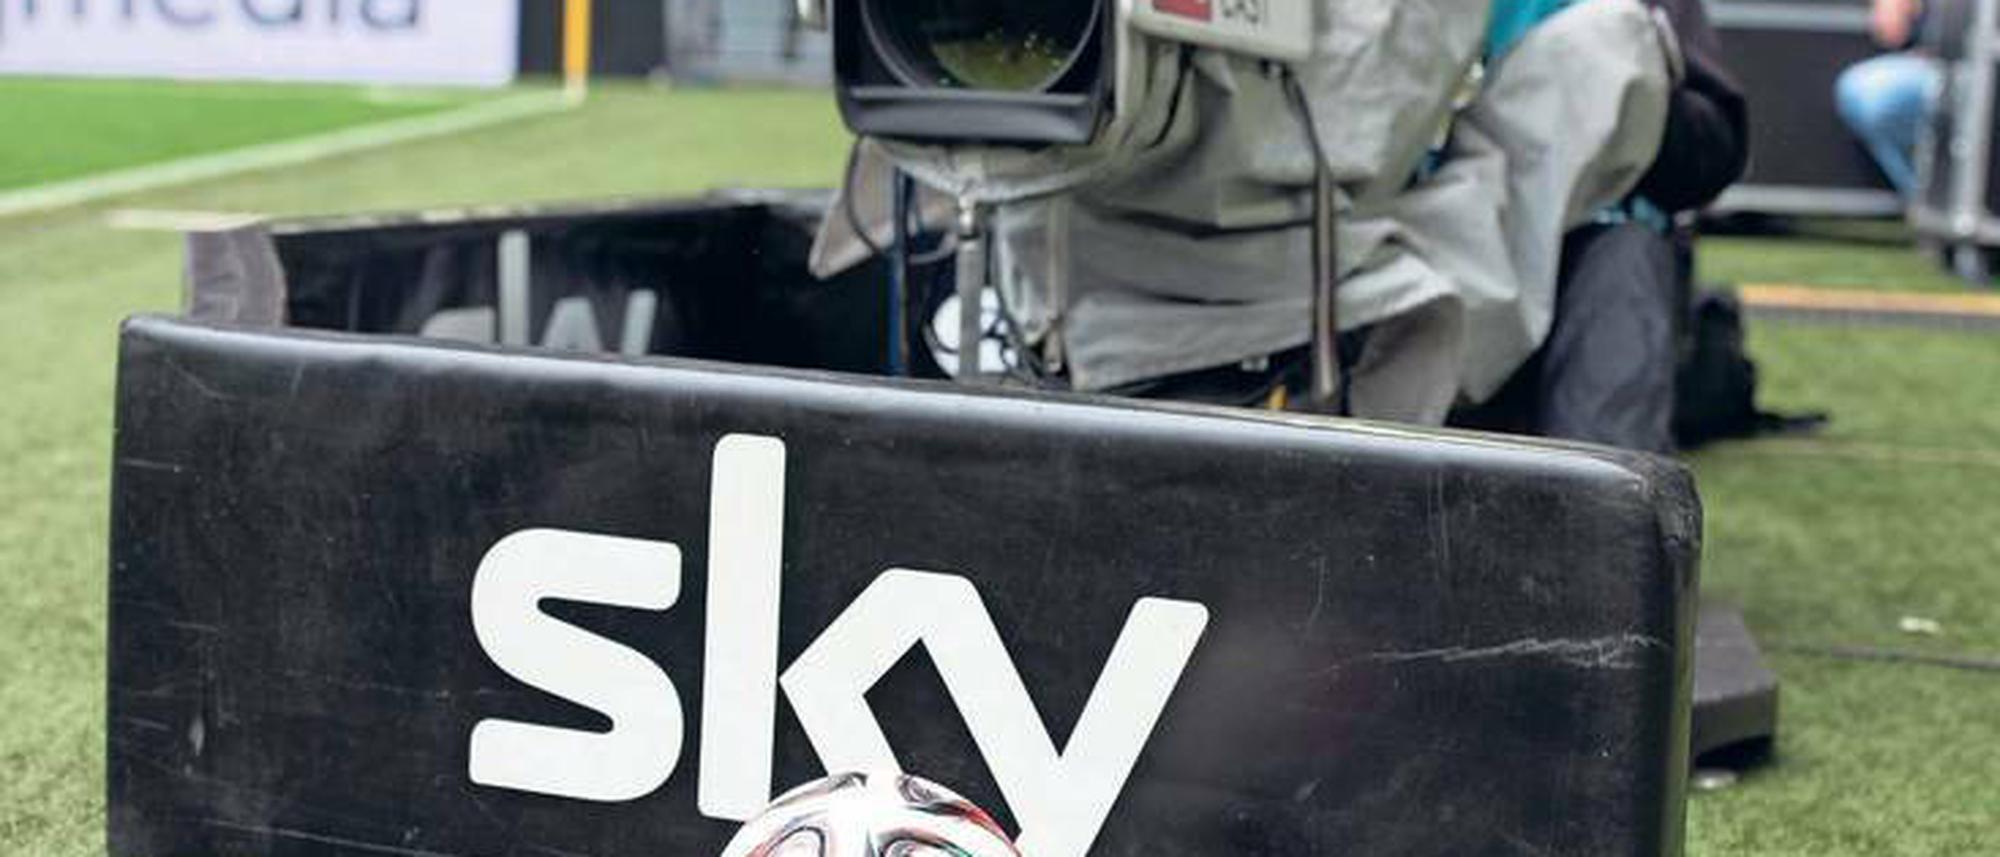 Bundesliga in TV, Radio, Internet Live-Fußball im Fernsehen wird komplizierter und teurer